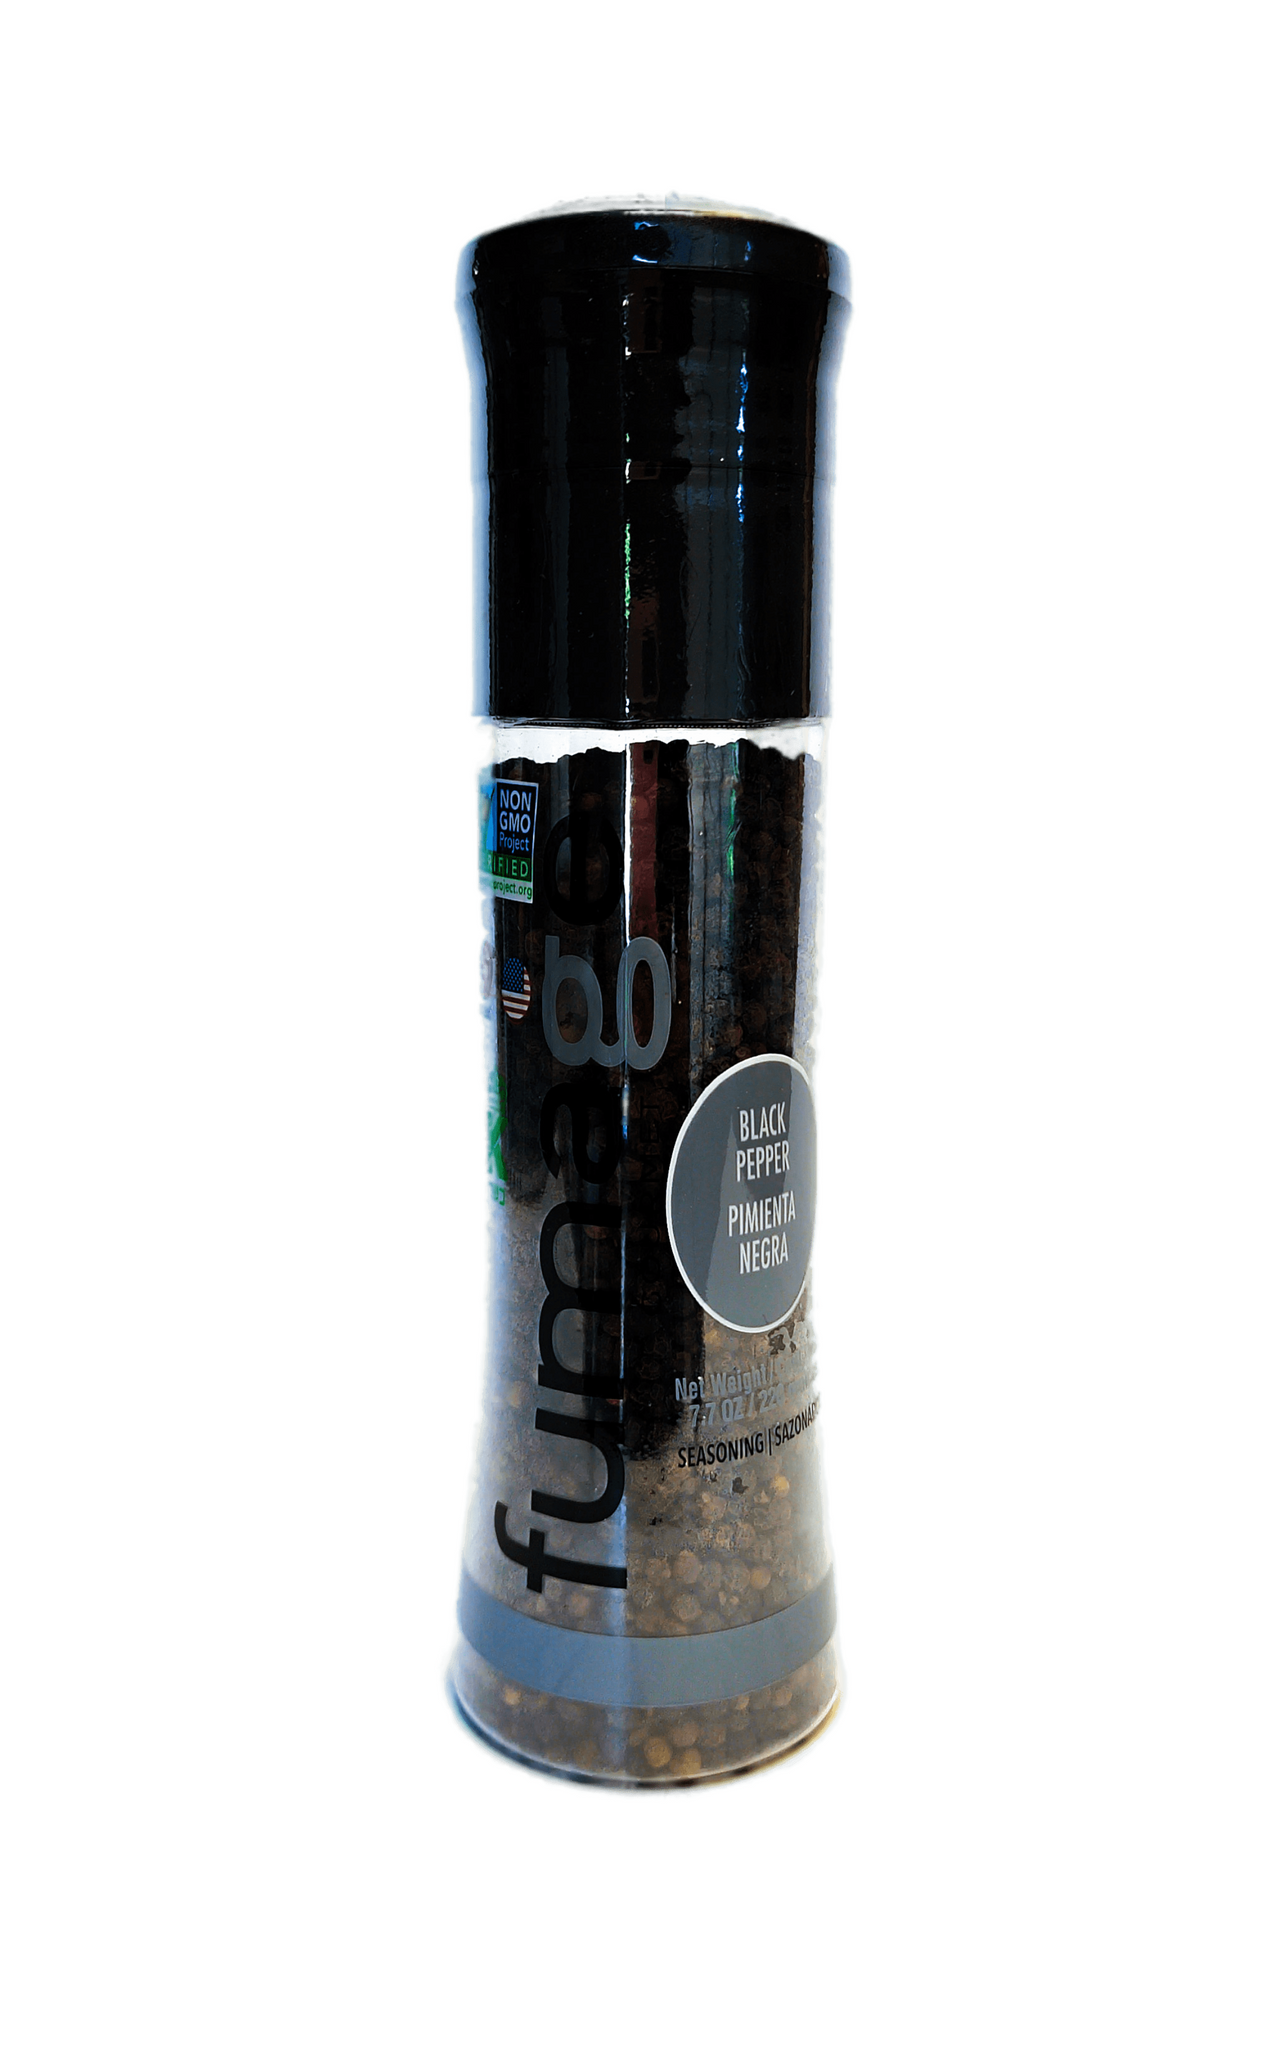 BLACK PEPPER LARGE GRINDER 220 Gr / 7.76 OZ – FumageGourmet